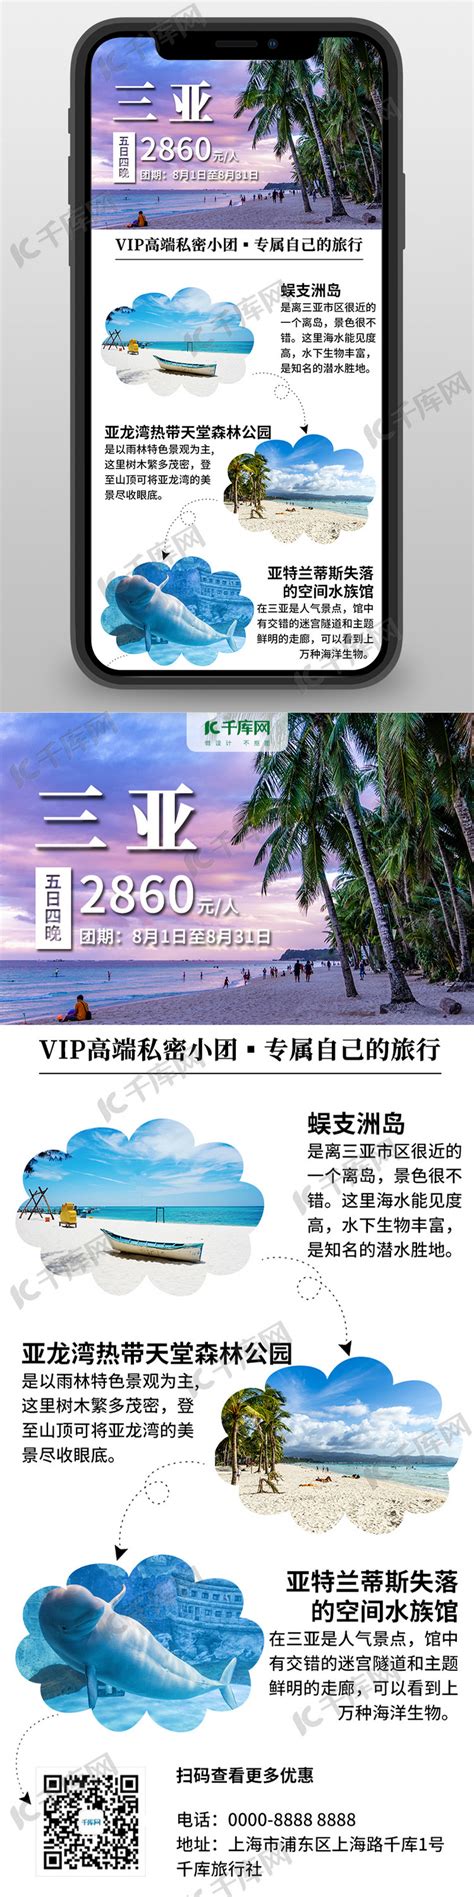 三亚启动“三月三”定向旅游营销推广活动-新闻中心-南海网